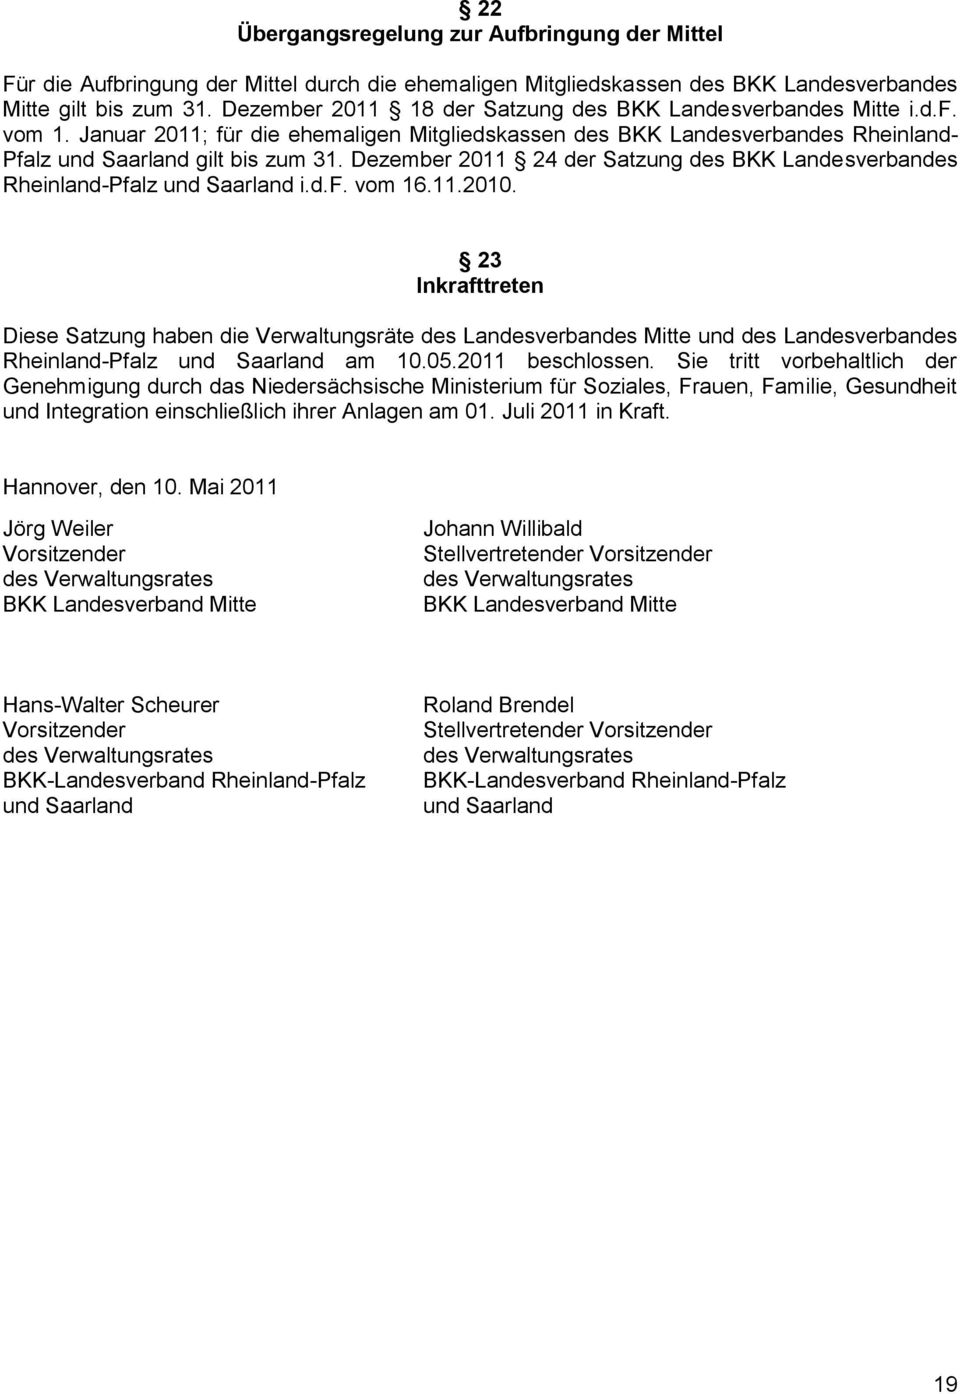 Dezember 2011 24 der Satzung des BKK Landesverbandes Rheinland-Pfalz und Saarland i.d.f. vom 16.11.2010.